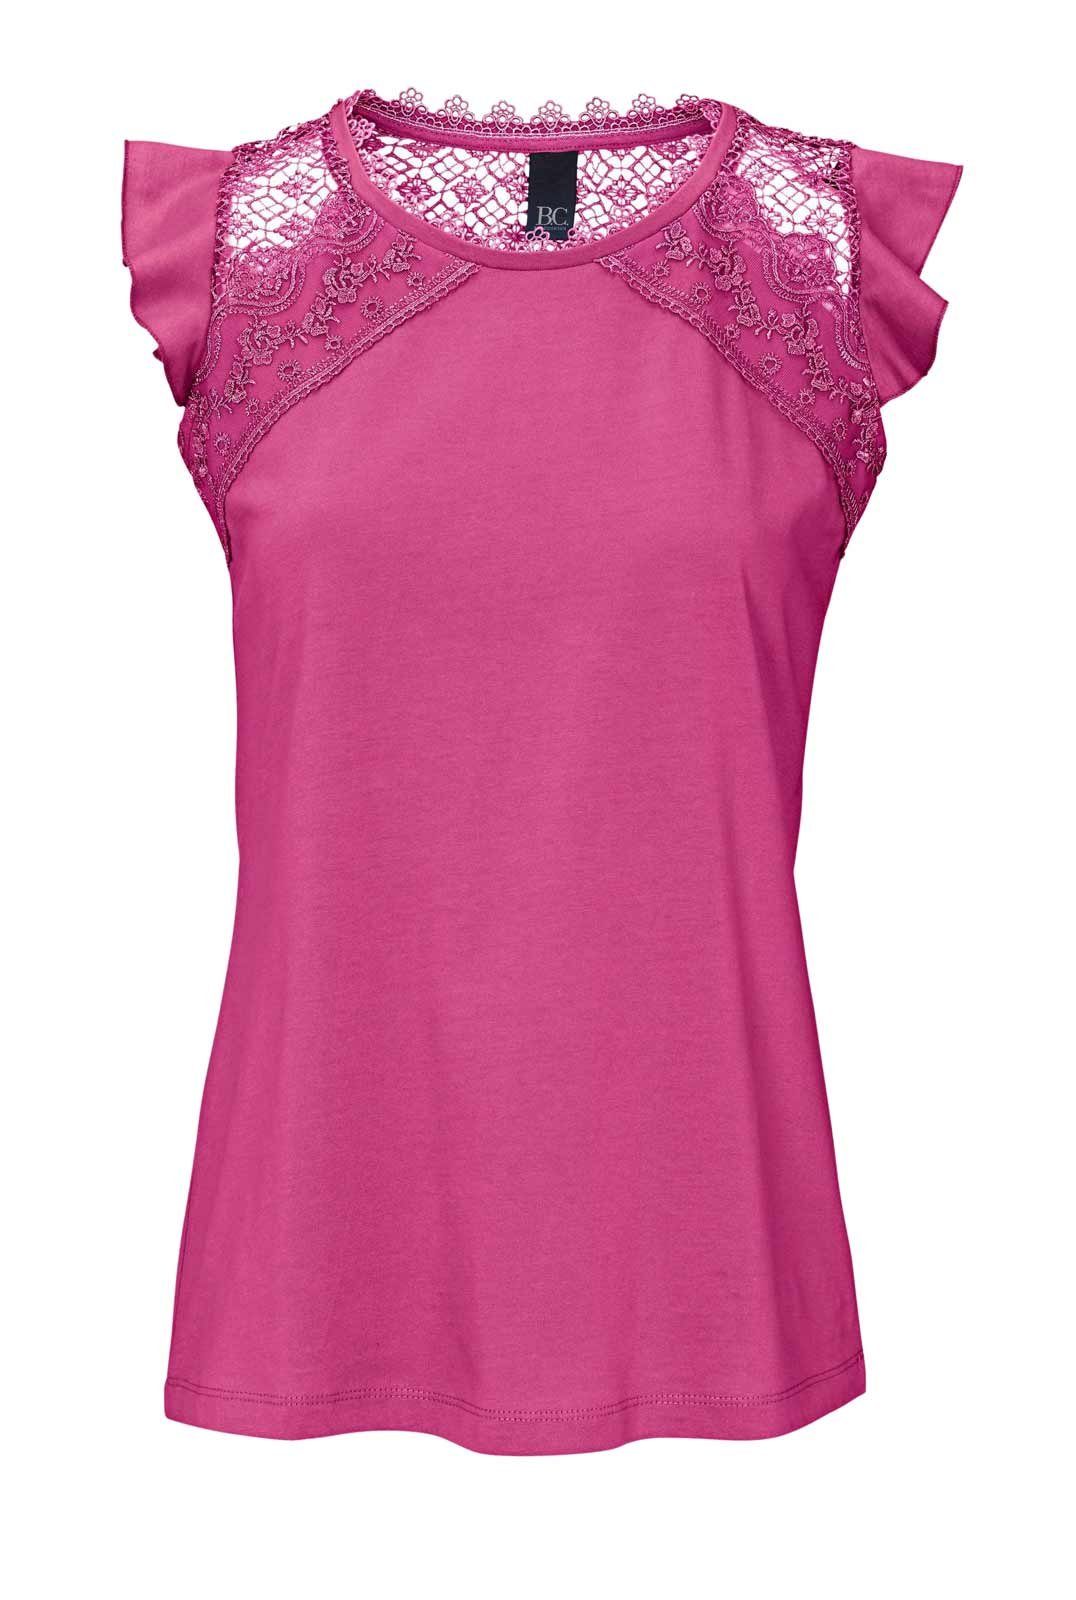 B.C. Best Connection by Häkelspitze, pink Jerseyshirt Damen heine Best - T-Shirt Heine mit Connections